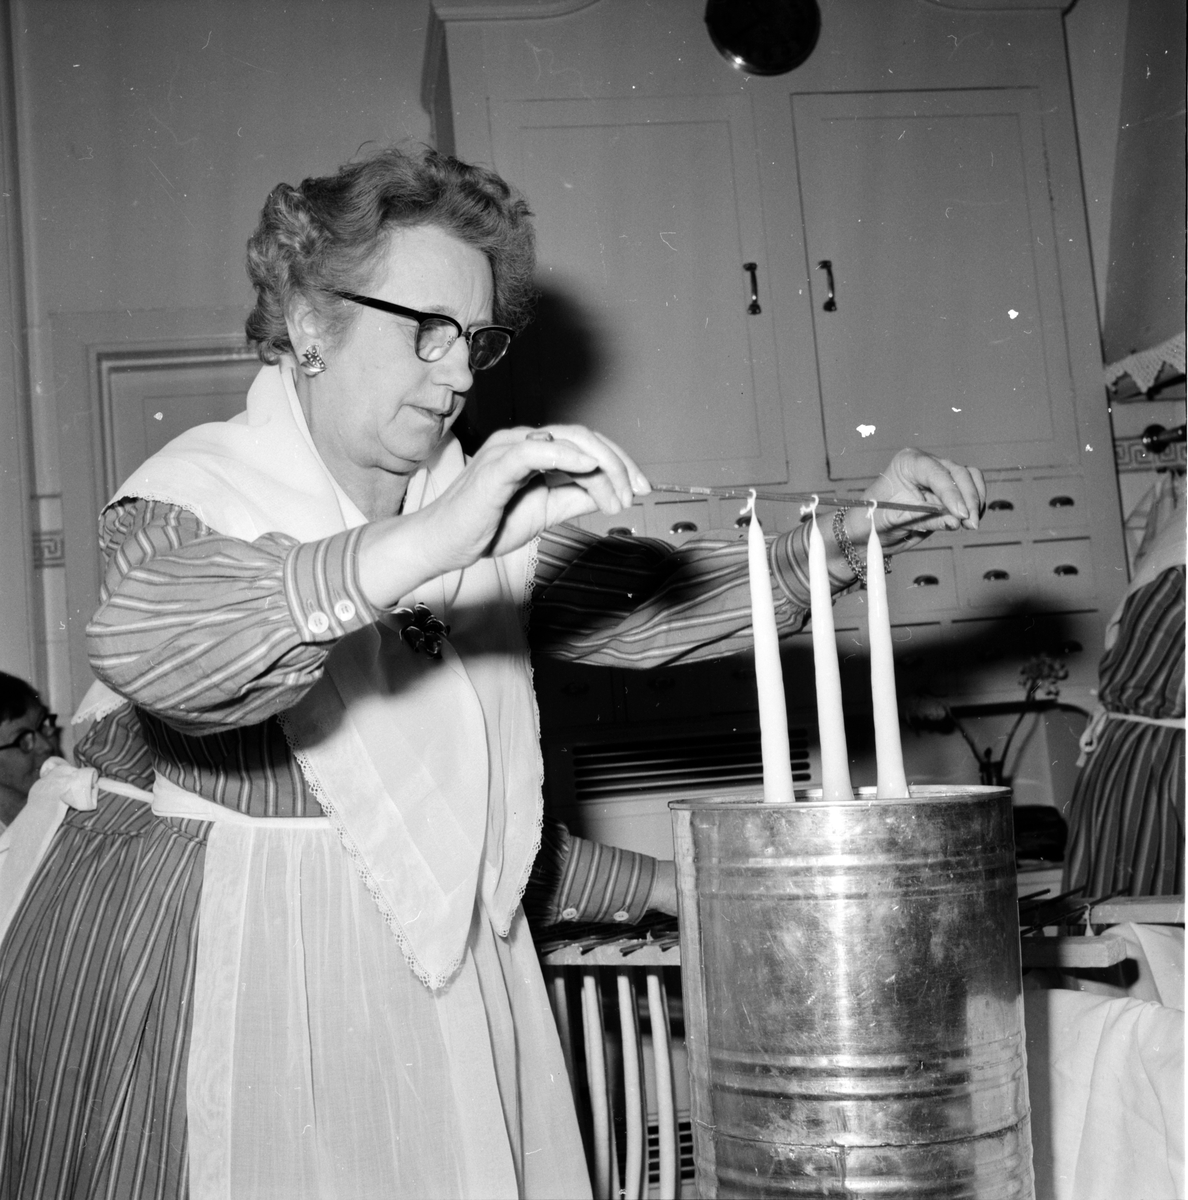 Ljusstöpning,
Husmodersföreningen,
1962